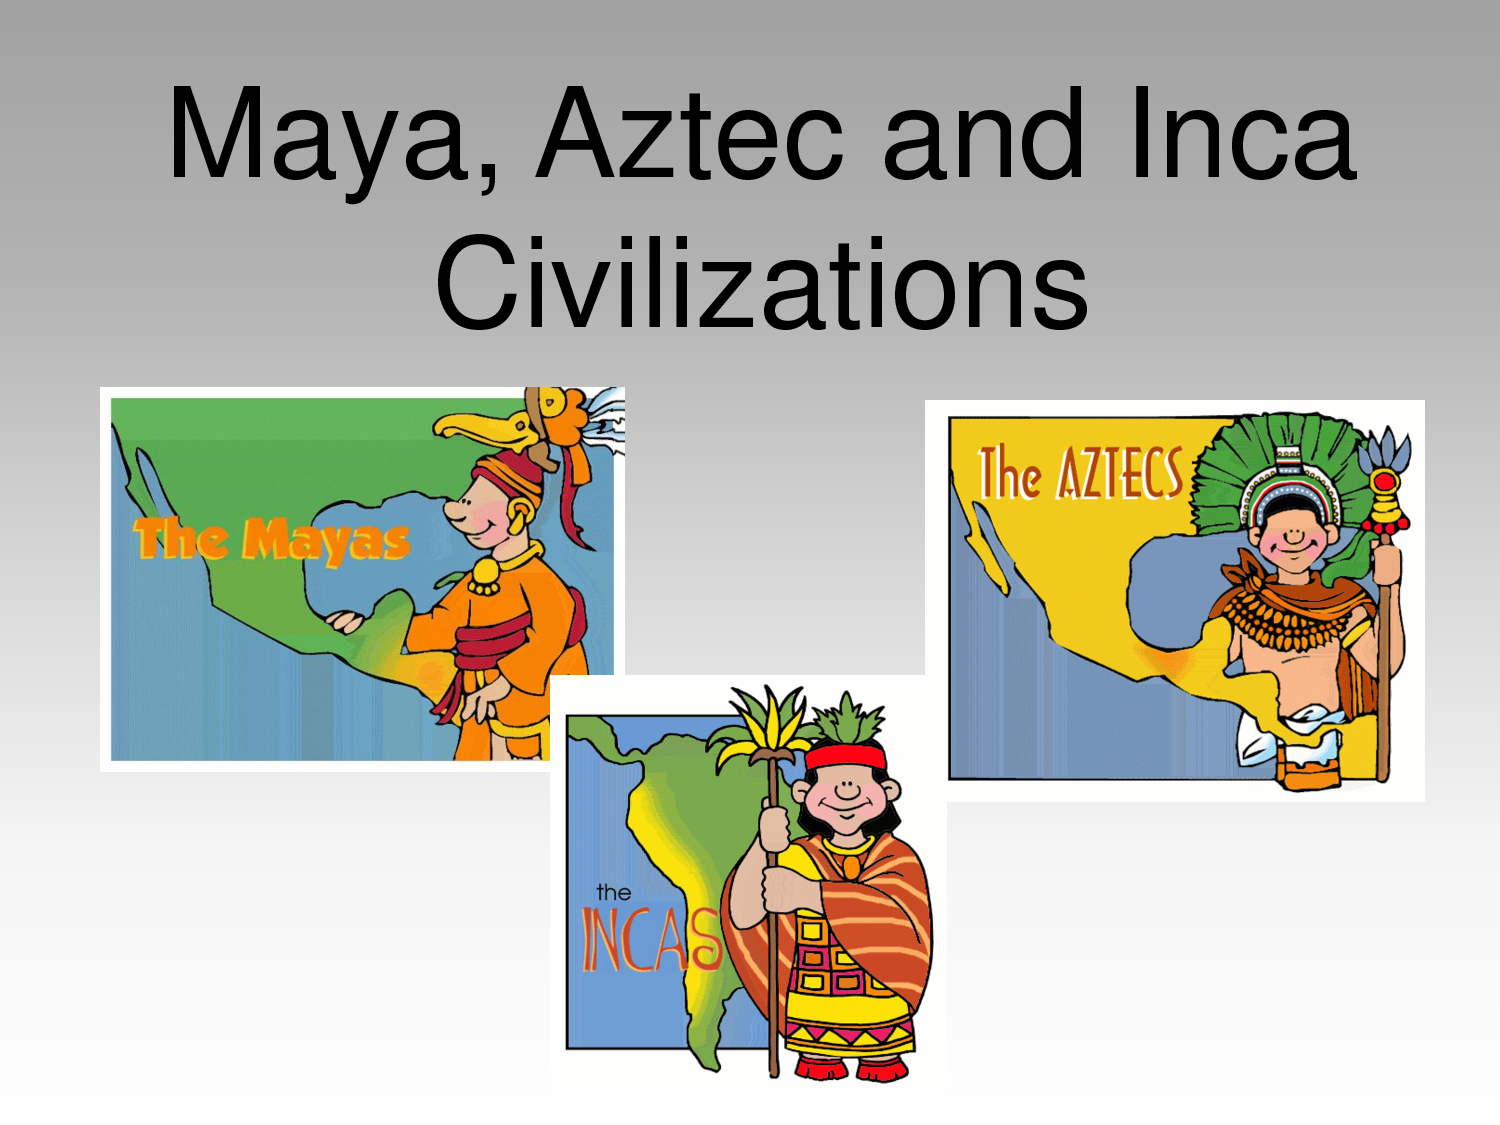 Las civilizaciones Precolombinas